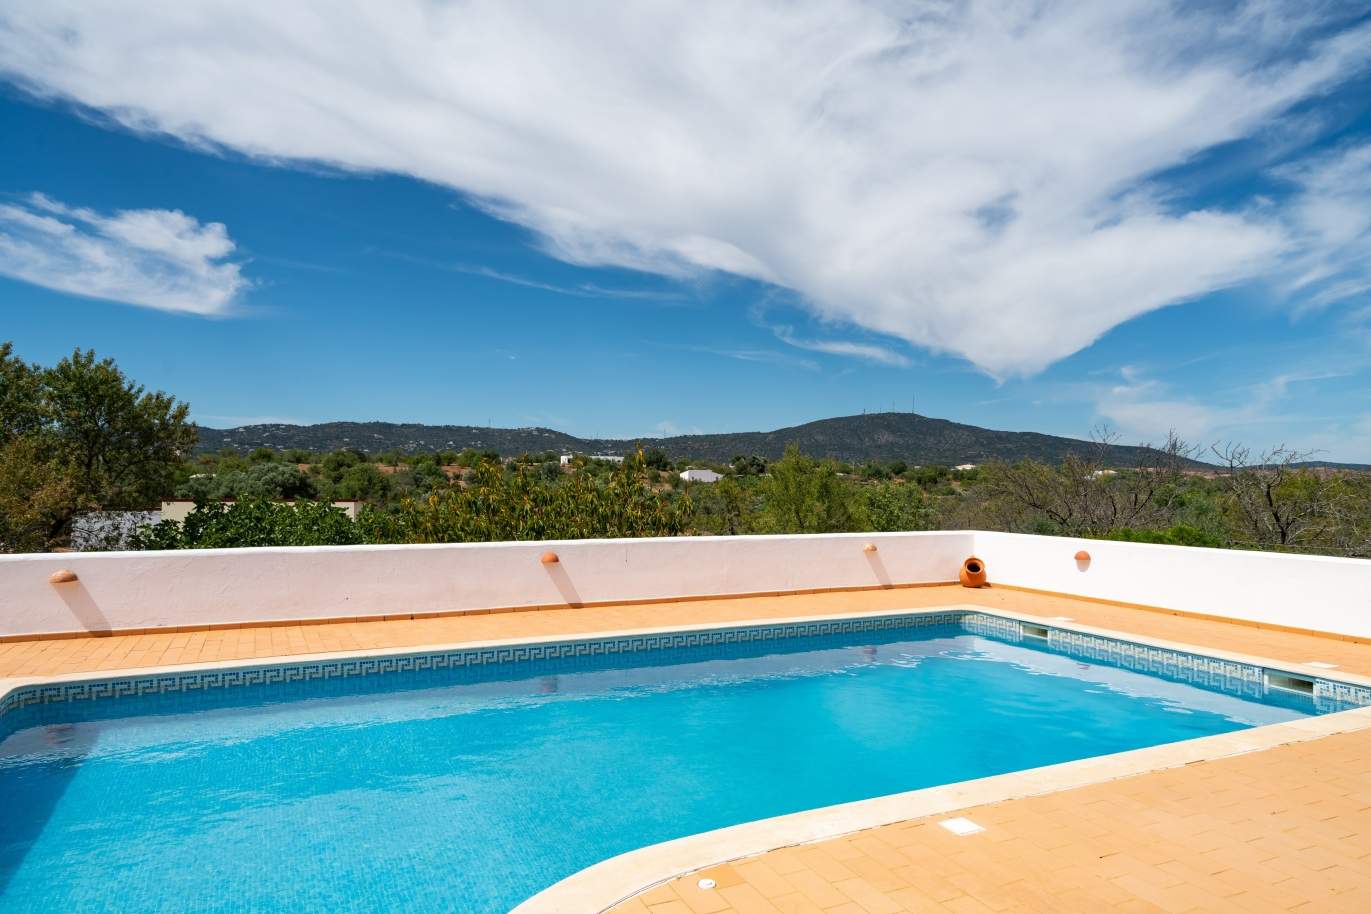 Moradia V4 com piscina, para venda, Quelfes, Olhão, Algarve_144155